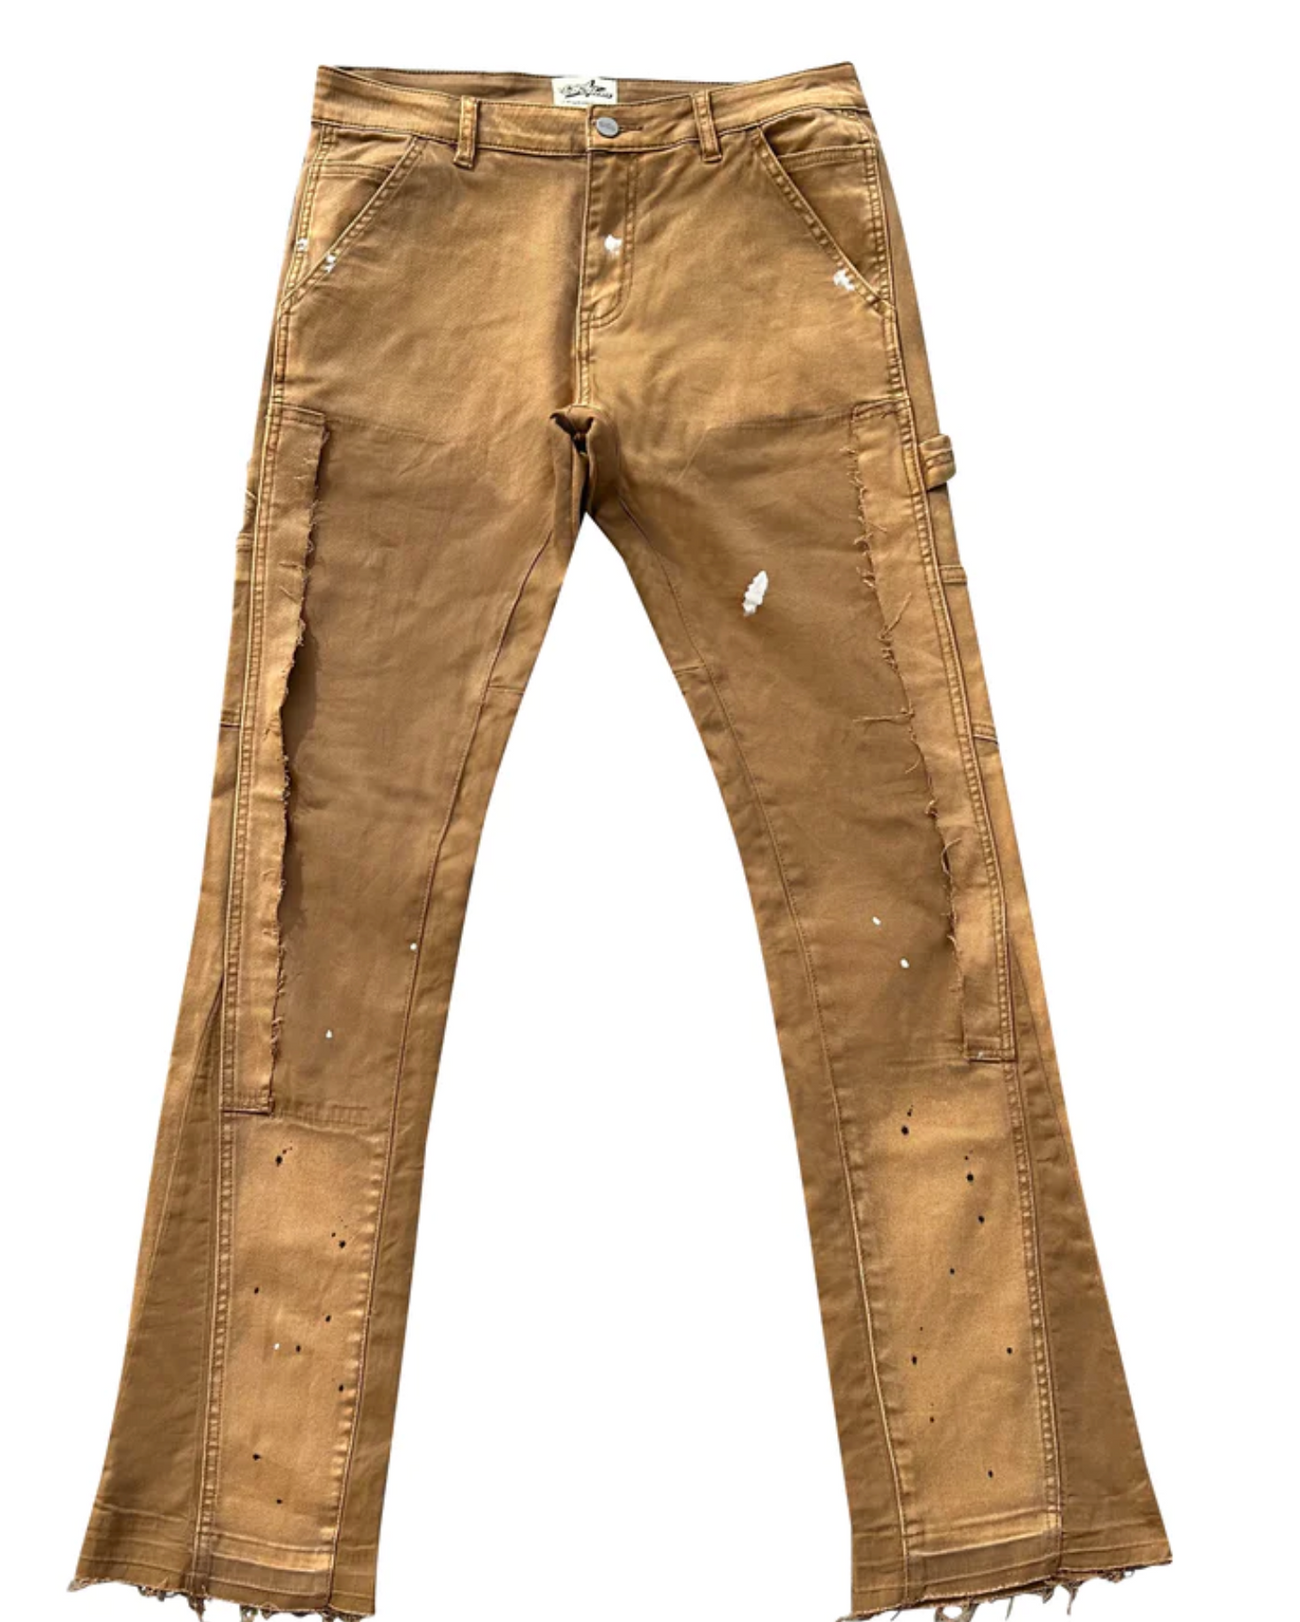 Khaki Denim Jeans 777